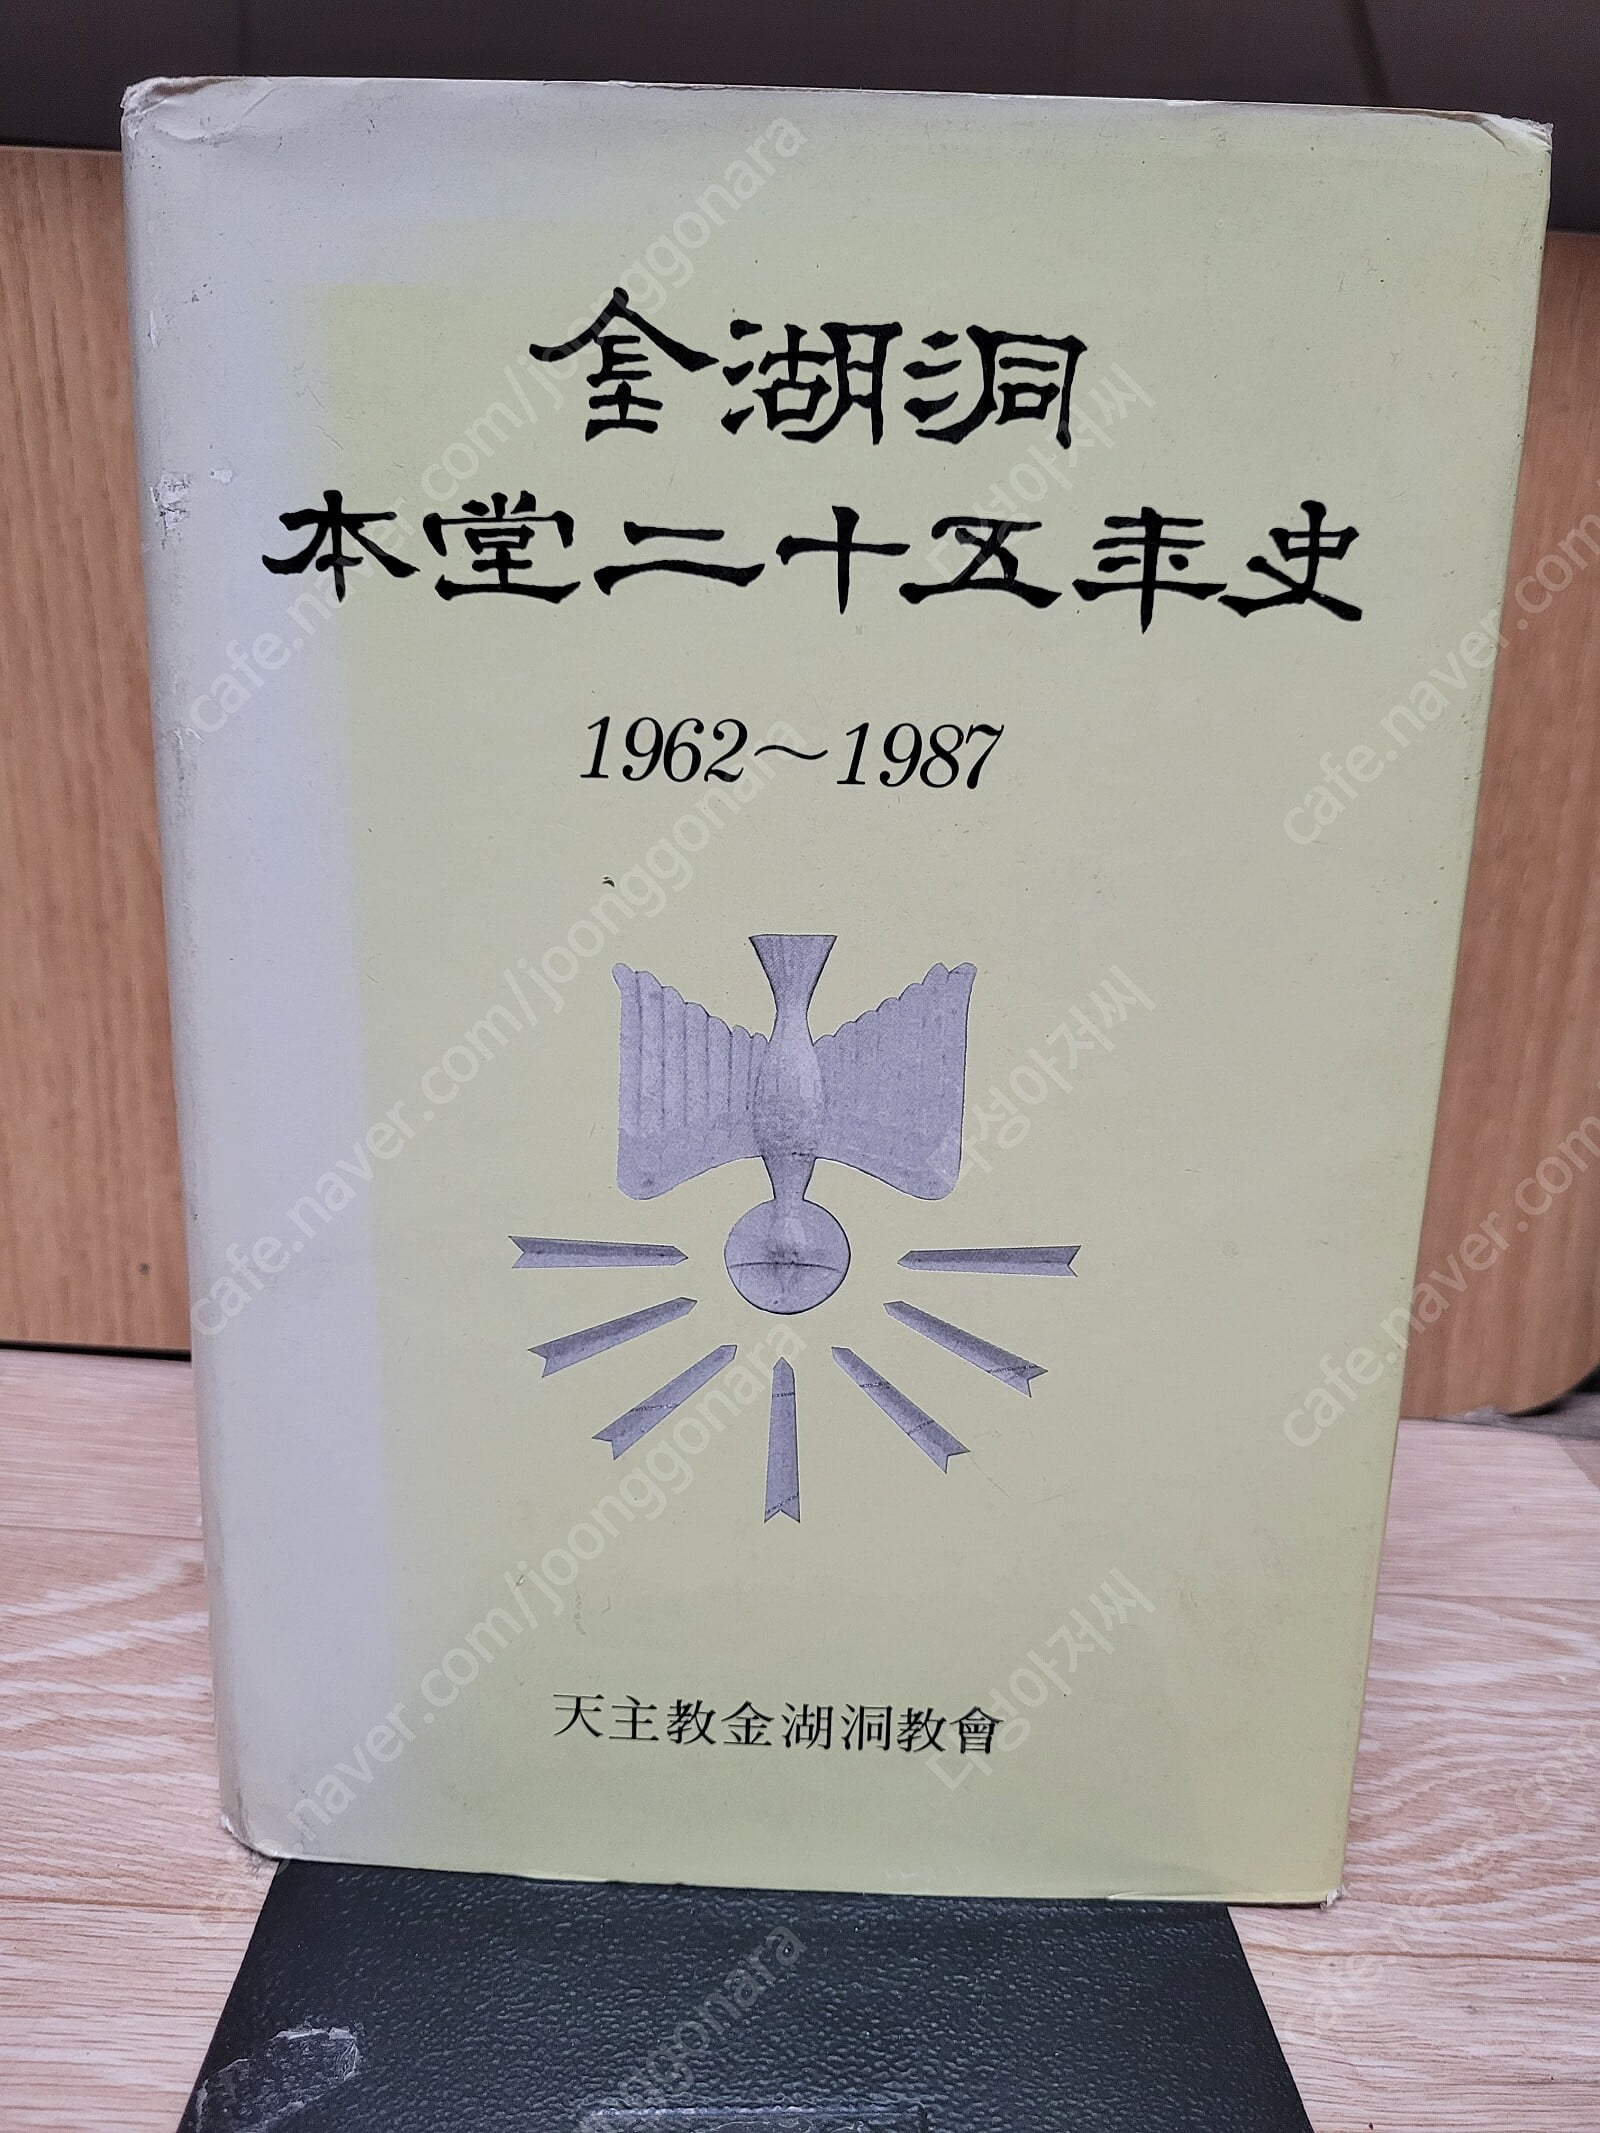 금호동 본당 25년사 (1963~1987) /1989/ 초판/양장본./실사진